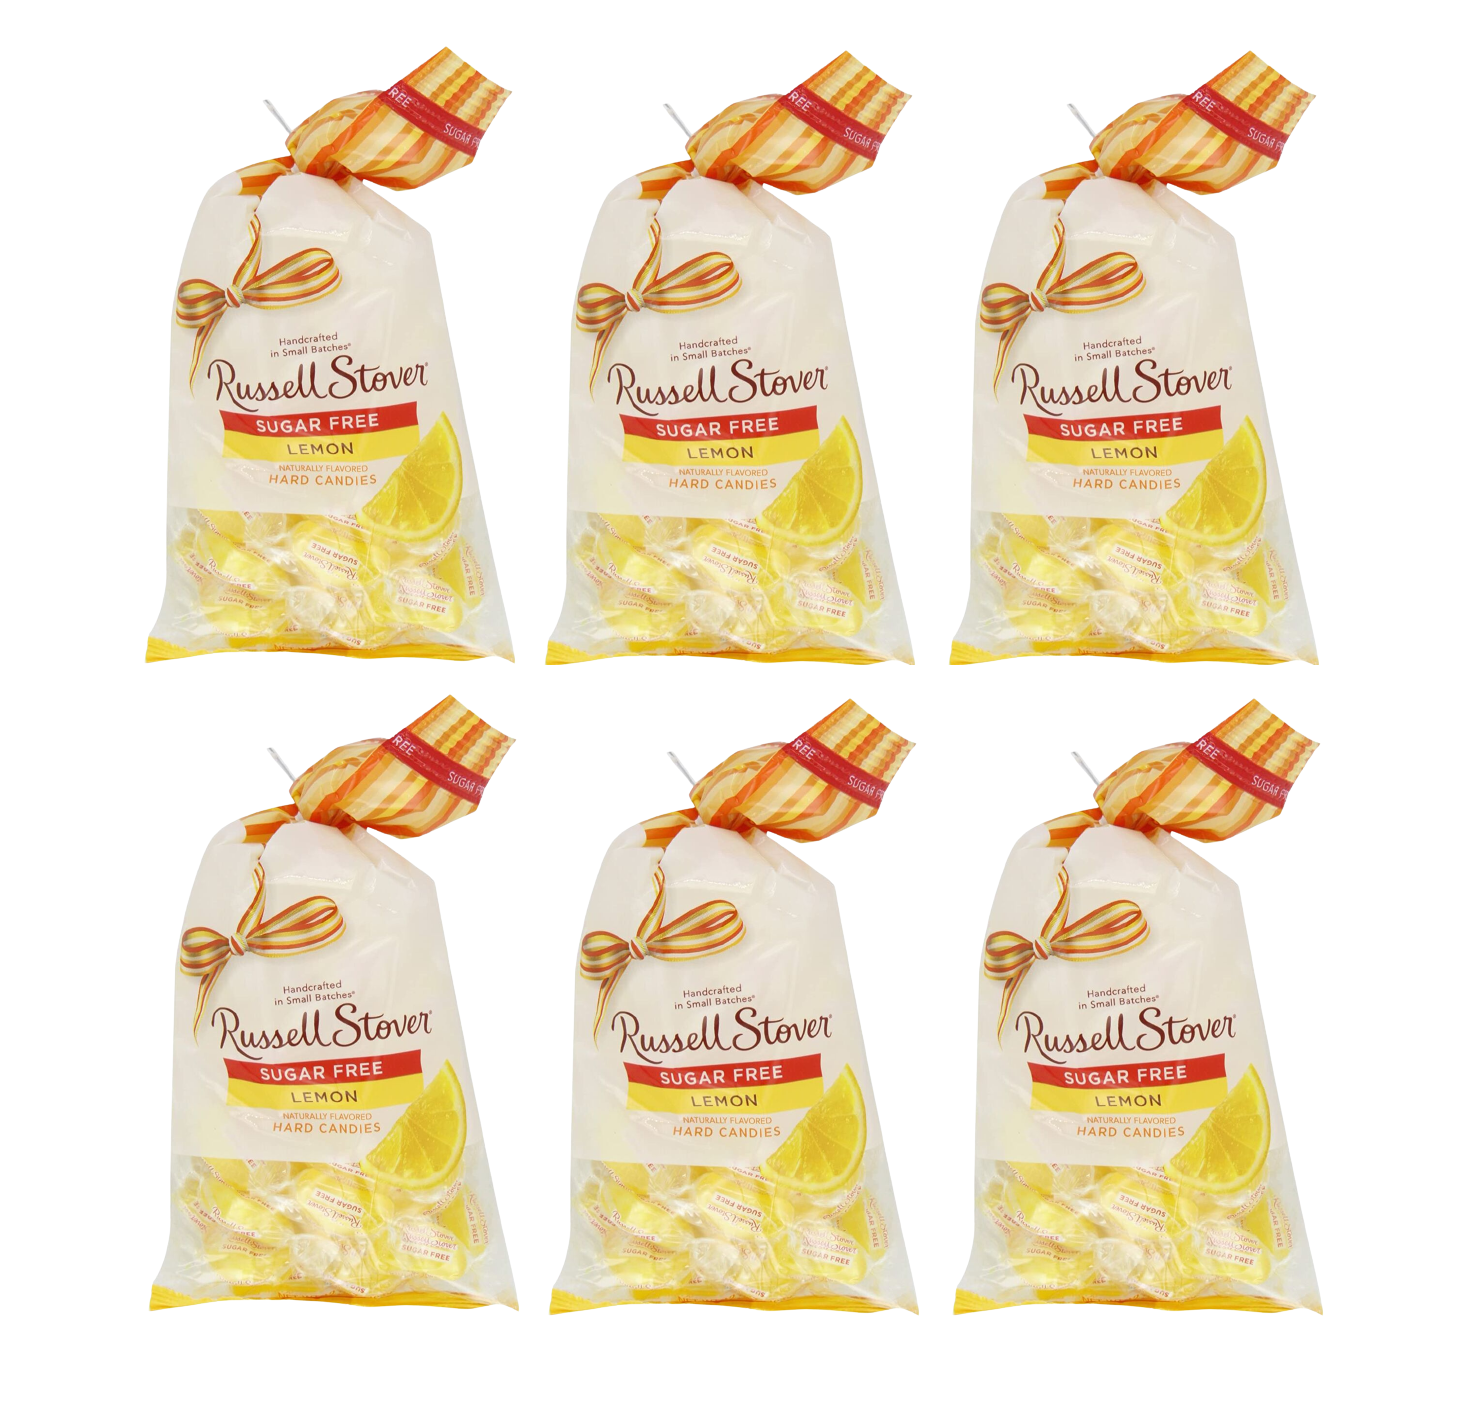 #Flavor_Lemon #Size_6 Bags